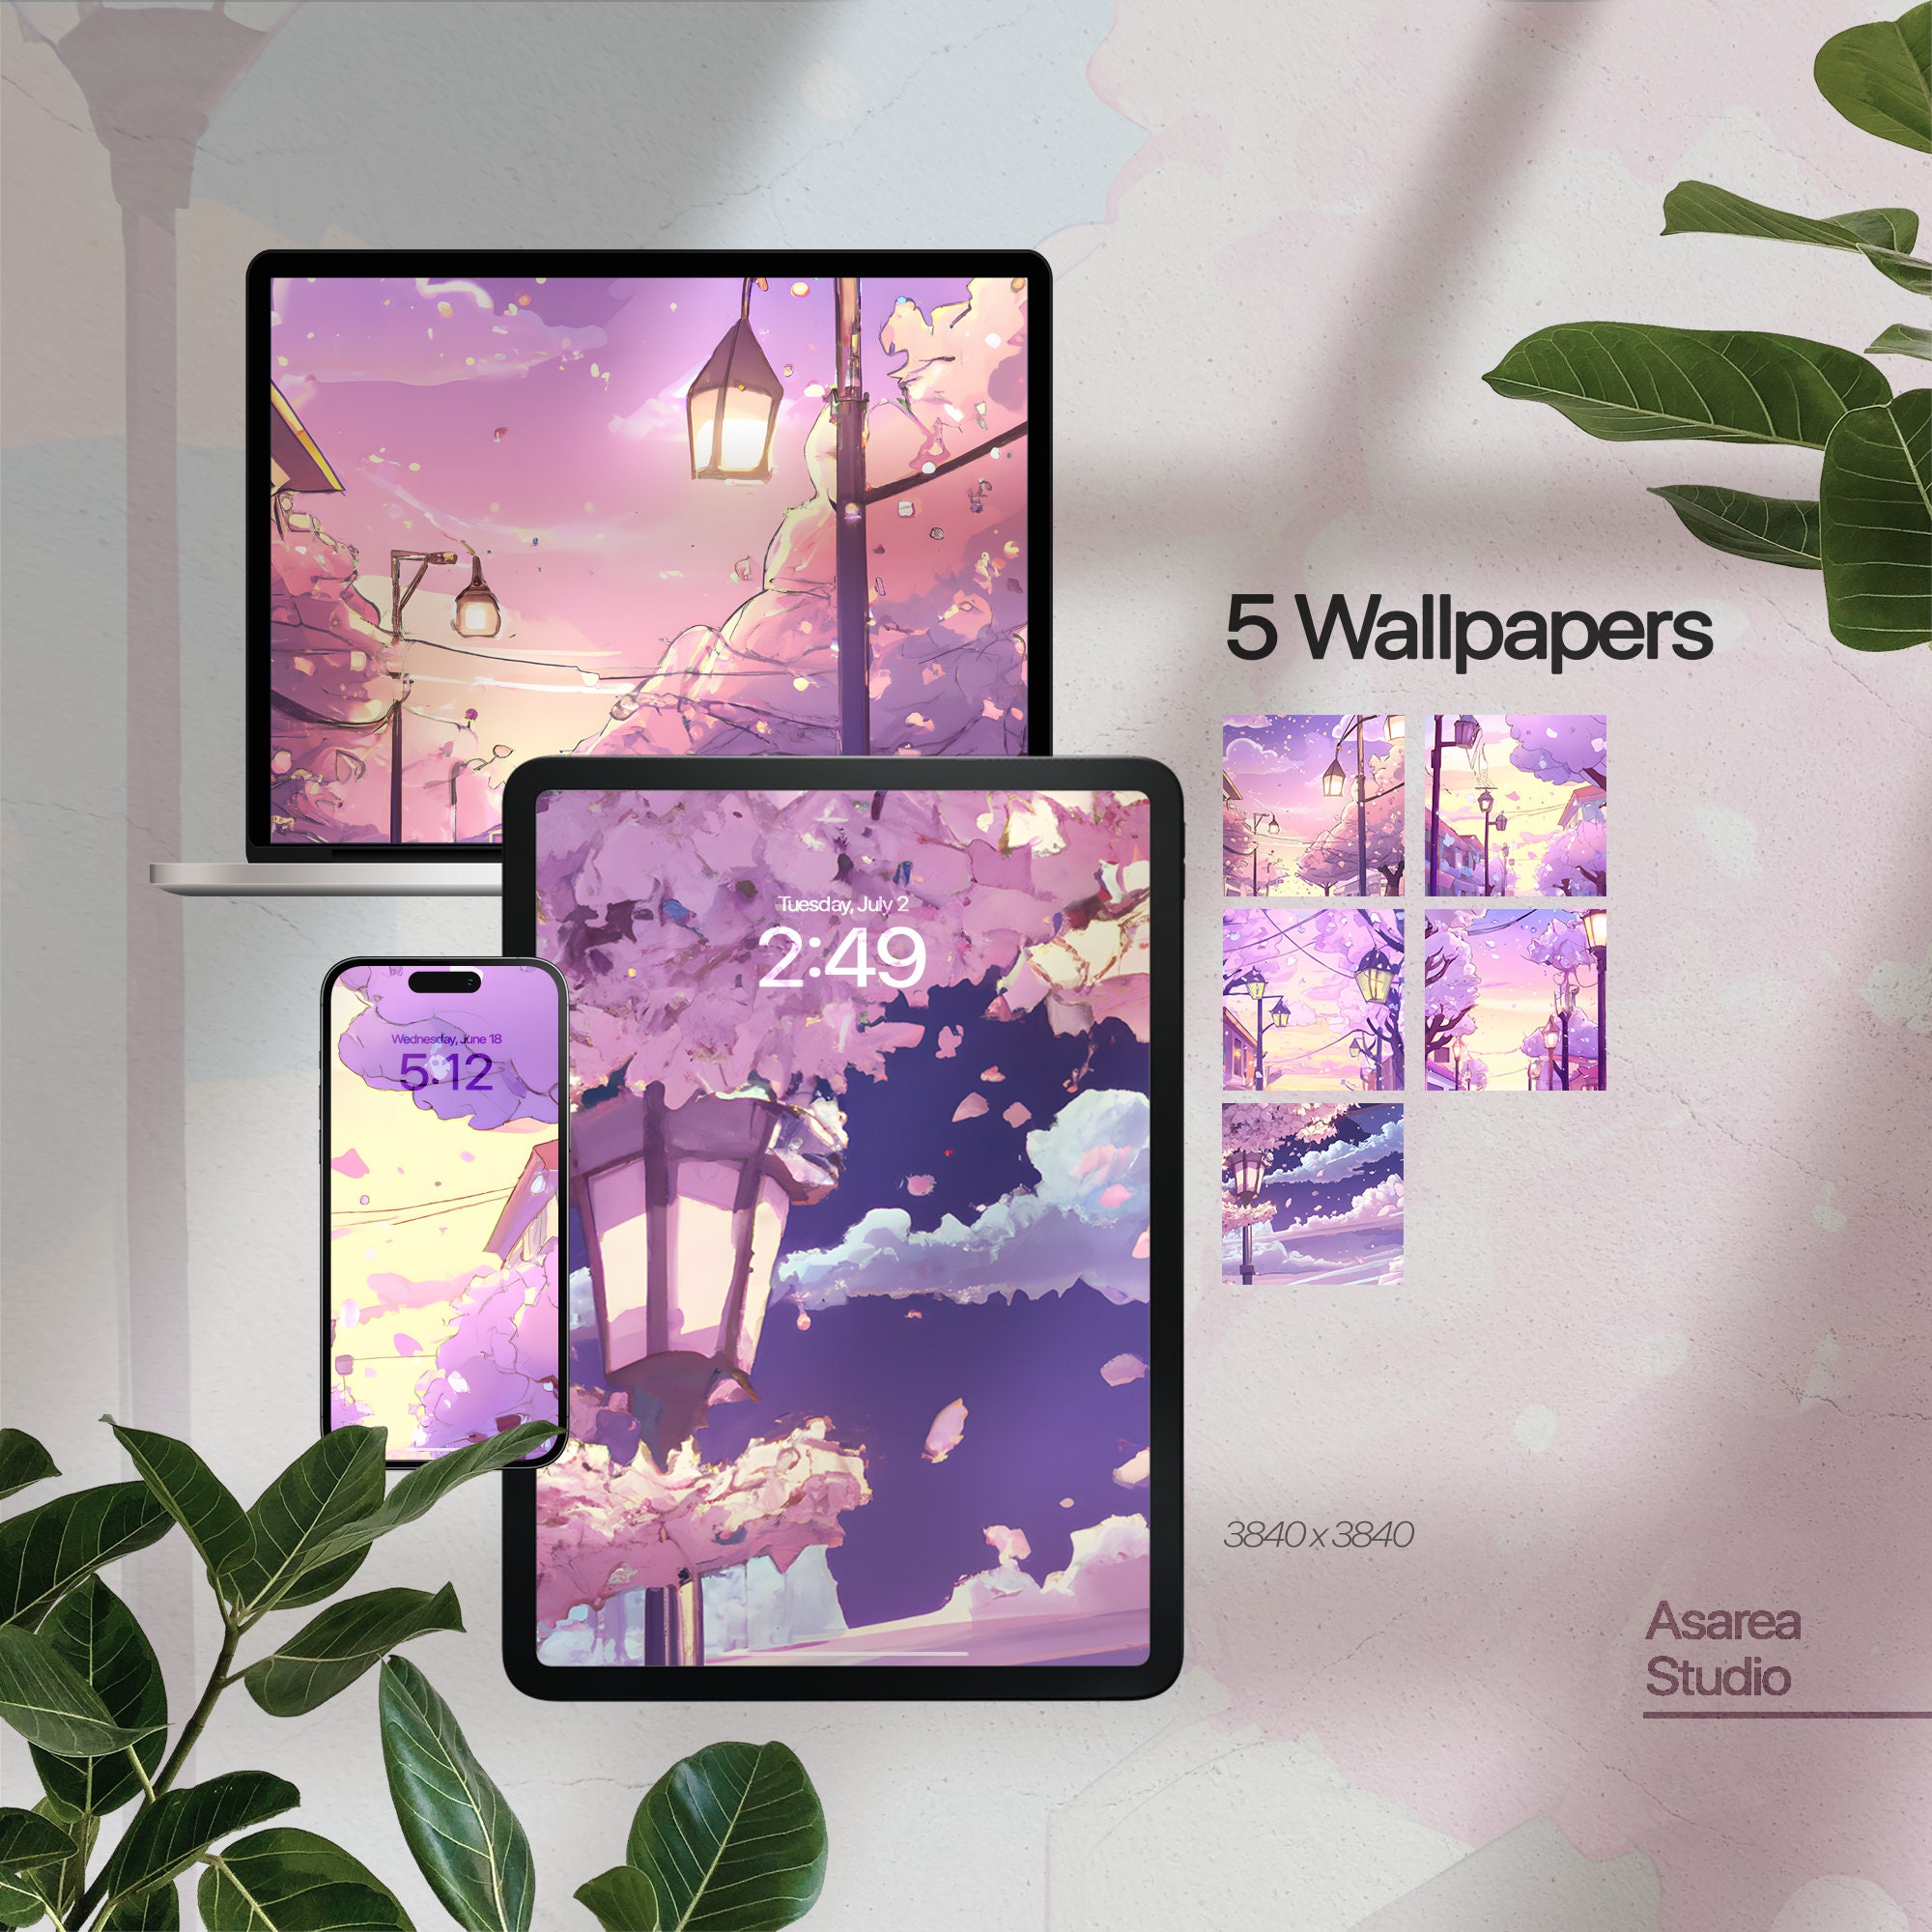 Purple aesthetic wallpaper for iPad/laptop by ashkittycat on DeviantArt